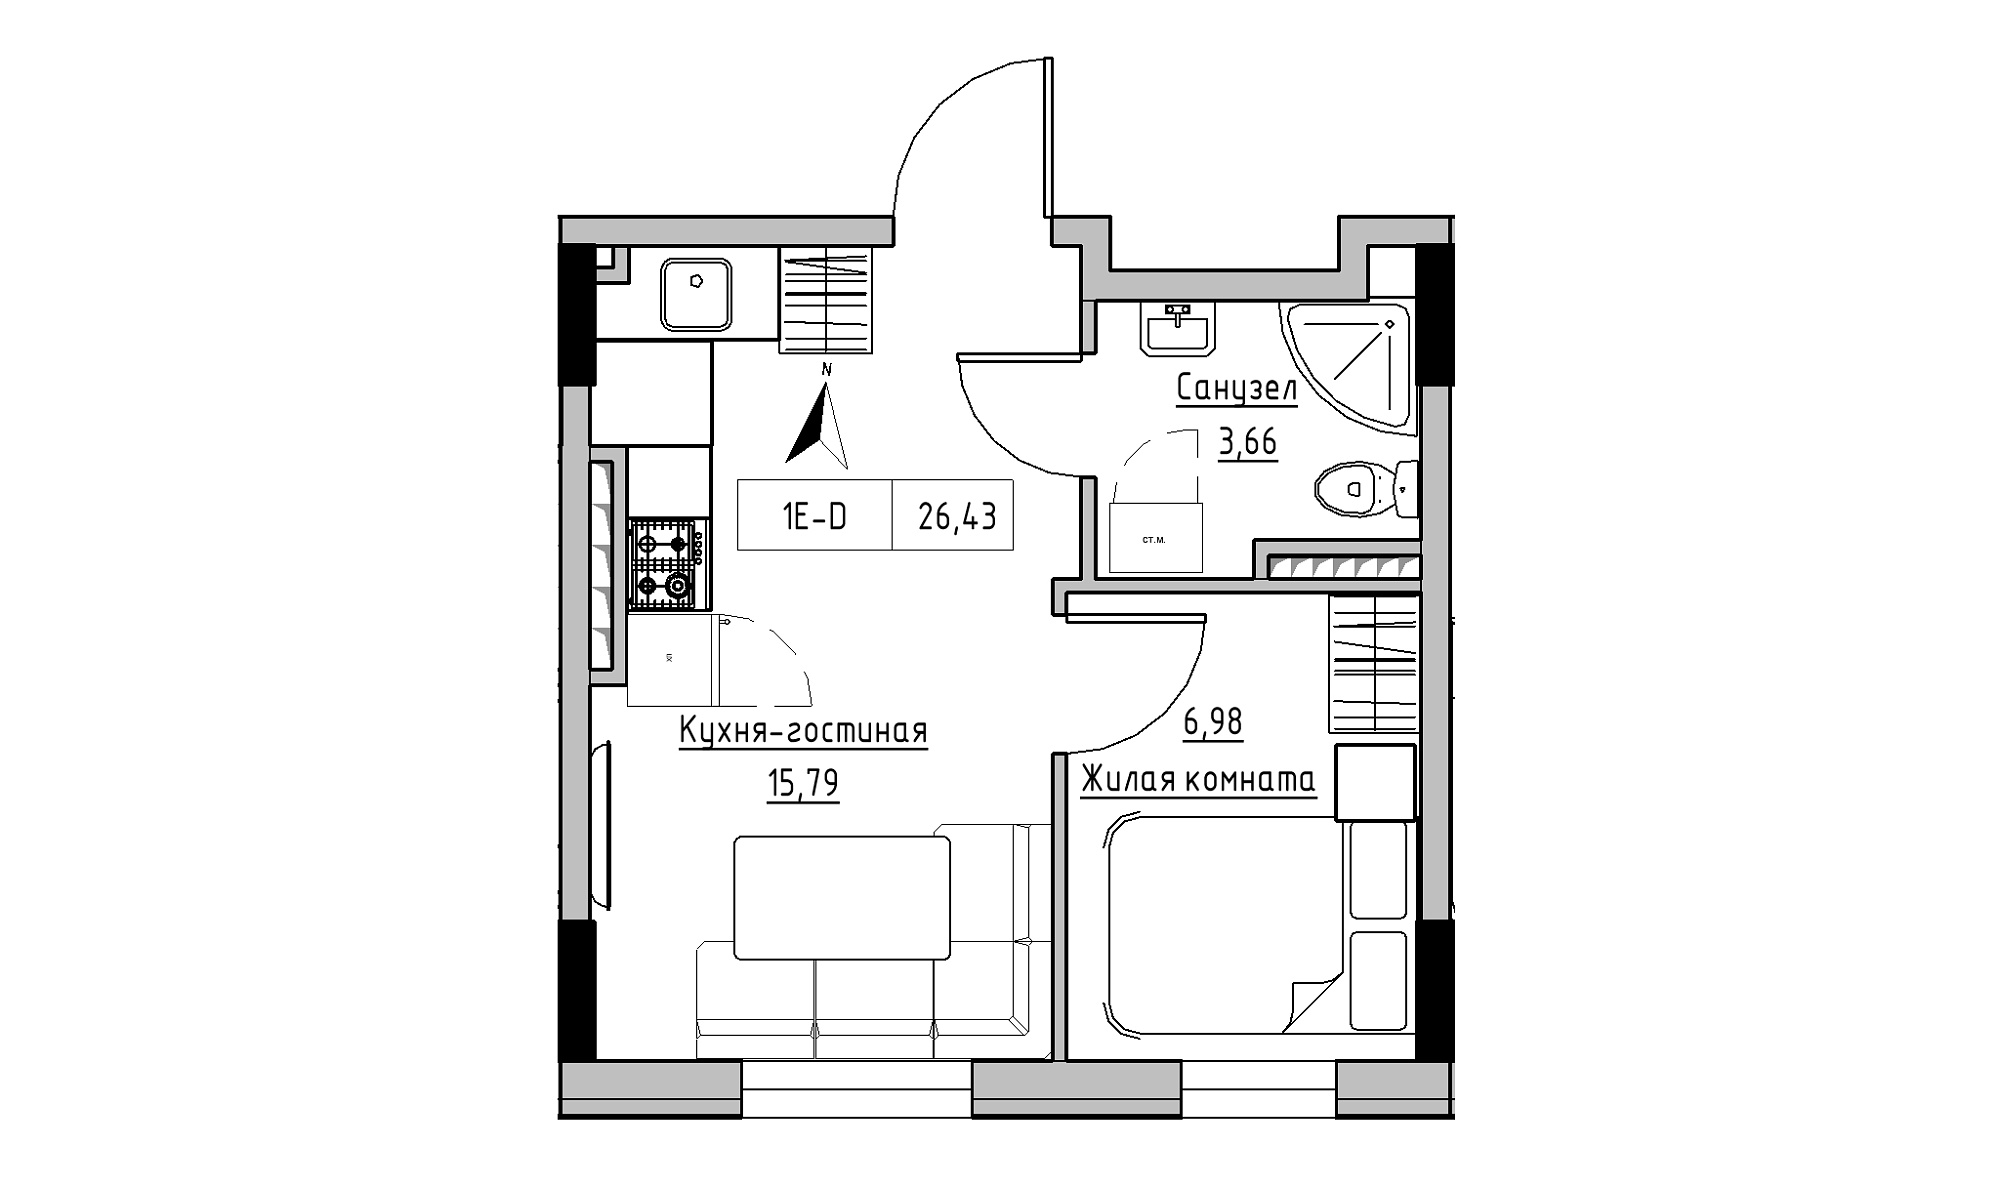 Планування 1-к квартира площею 26.43м2, KS-025-05/0013.